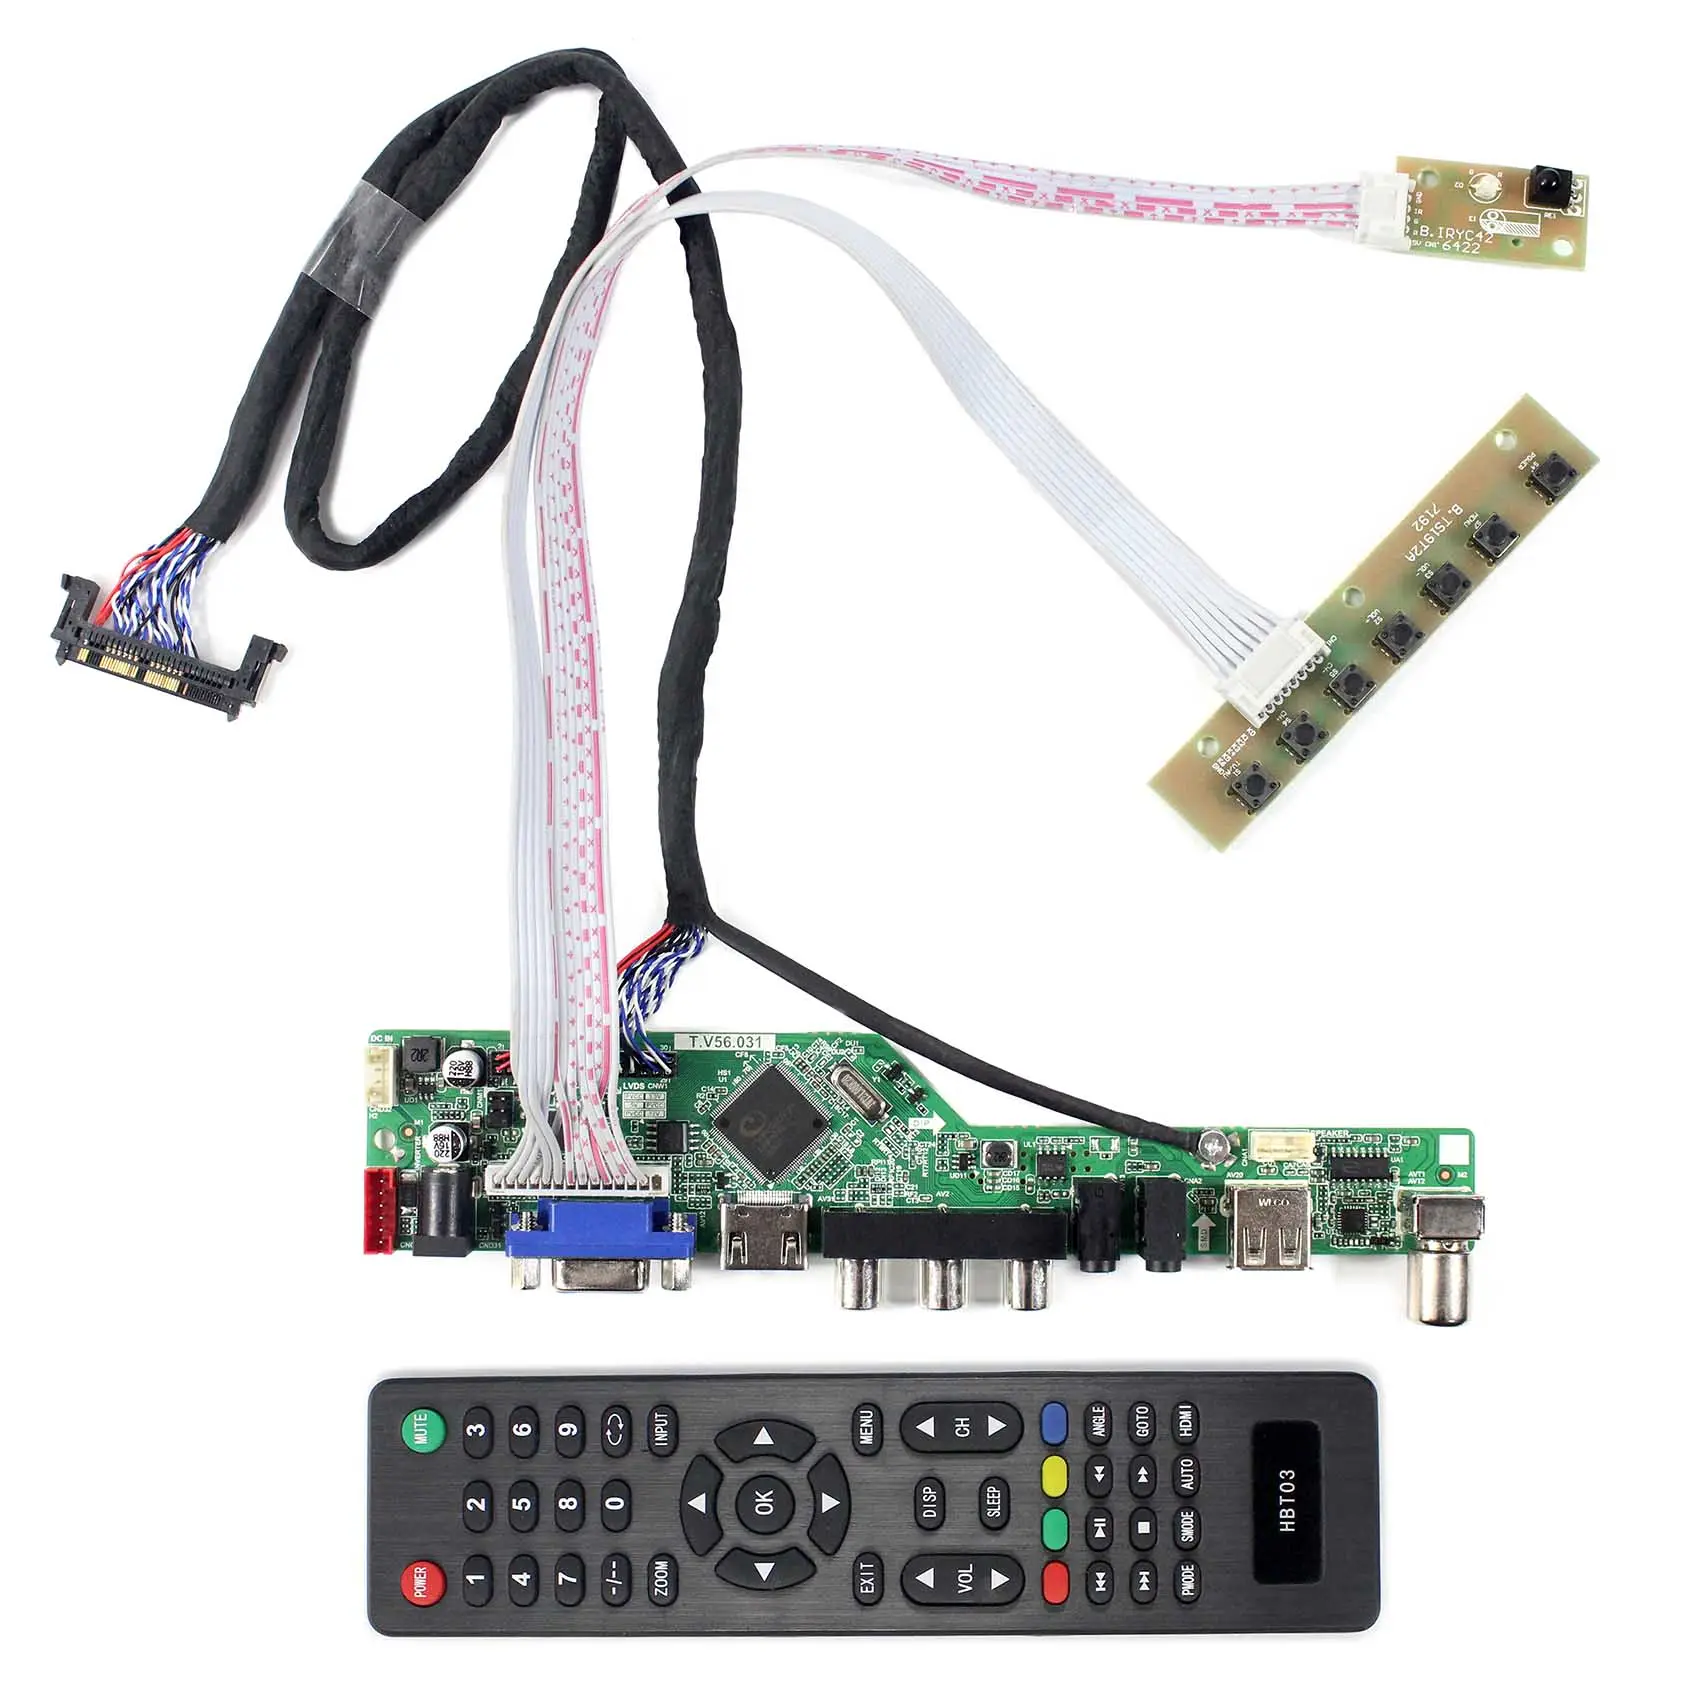 แผงวงจรหลัก32นิ้ว LG LED TV บอร์ดหลัก LCD TV HD Mi VGA AV USB RF แผงวงจรประกอบ PCB สำหรับ P320Hvn01.1 LCD 32นิ้ว